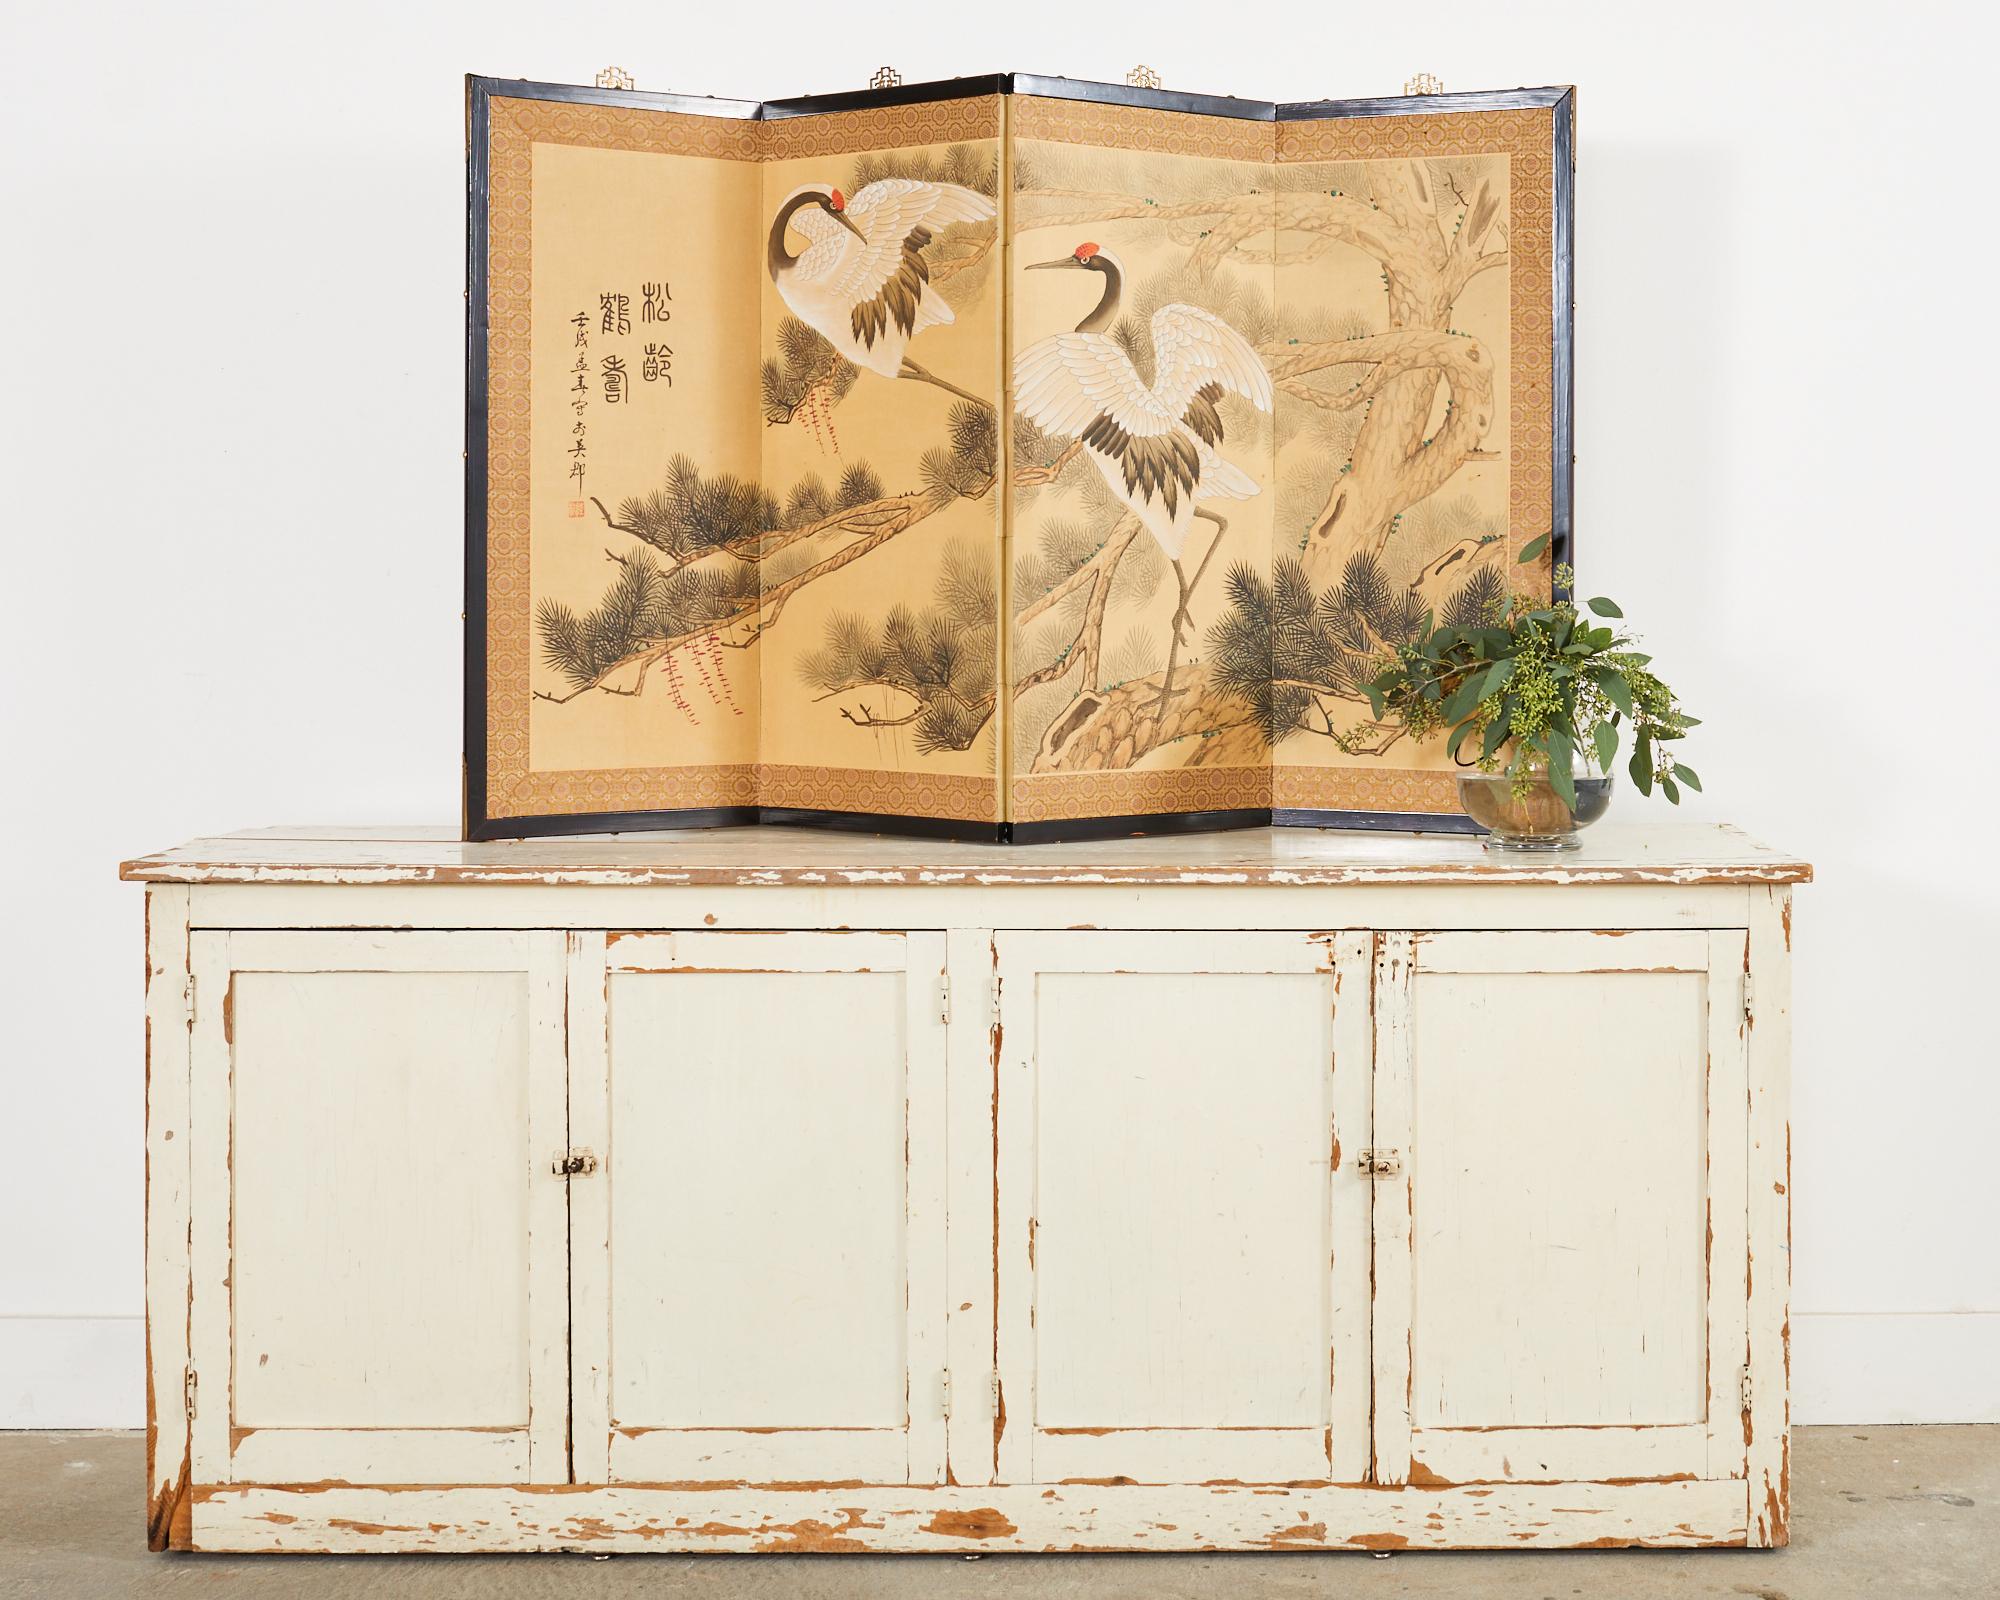 Fesselnder vierteiliger Byobu-Faltschirm im japanischen Stil des 20. Jahrhunderts. Die Leinwand trägt den Titel 